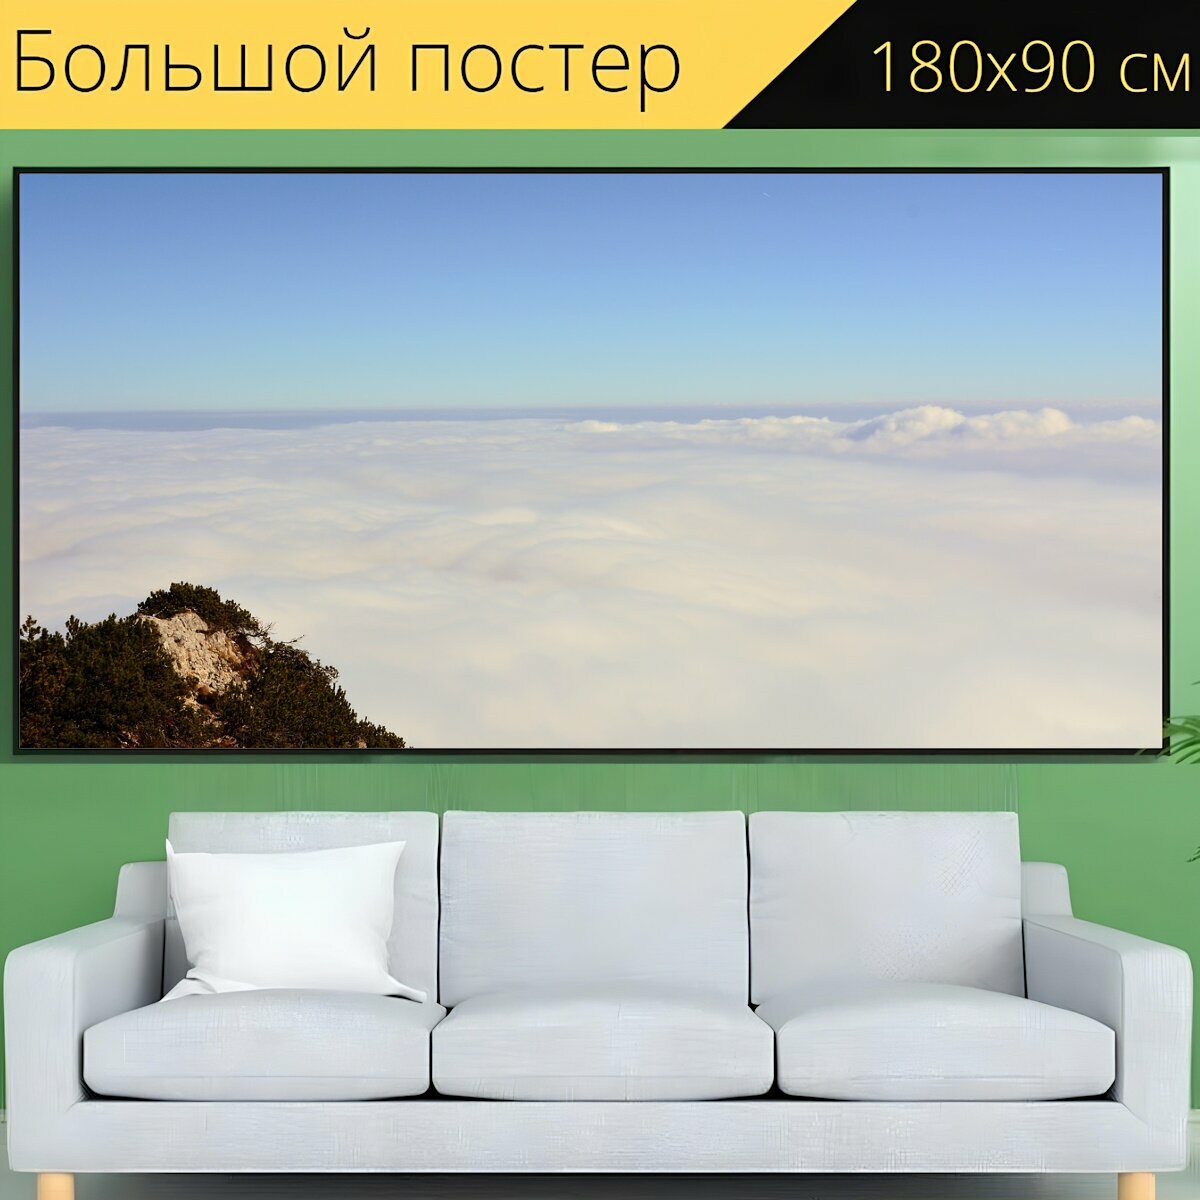 Большой постер "Облака, горы, панорама" 180 x 90 см. для интерьера